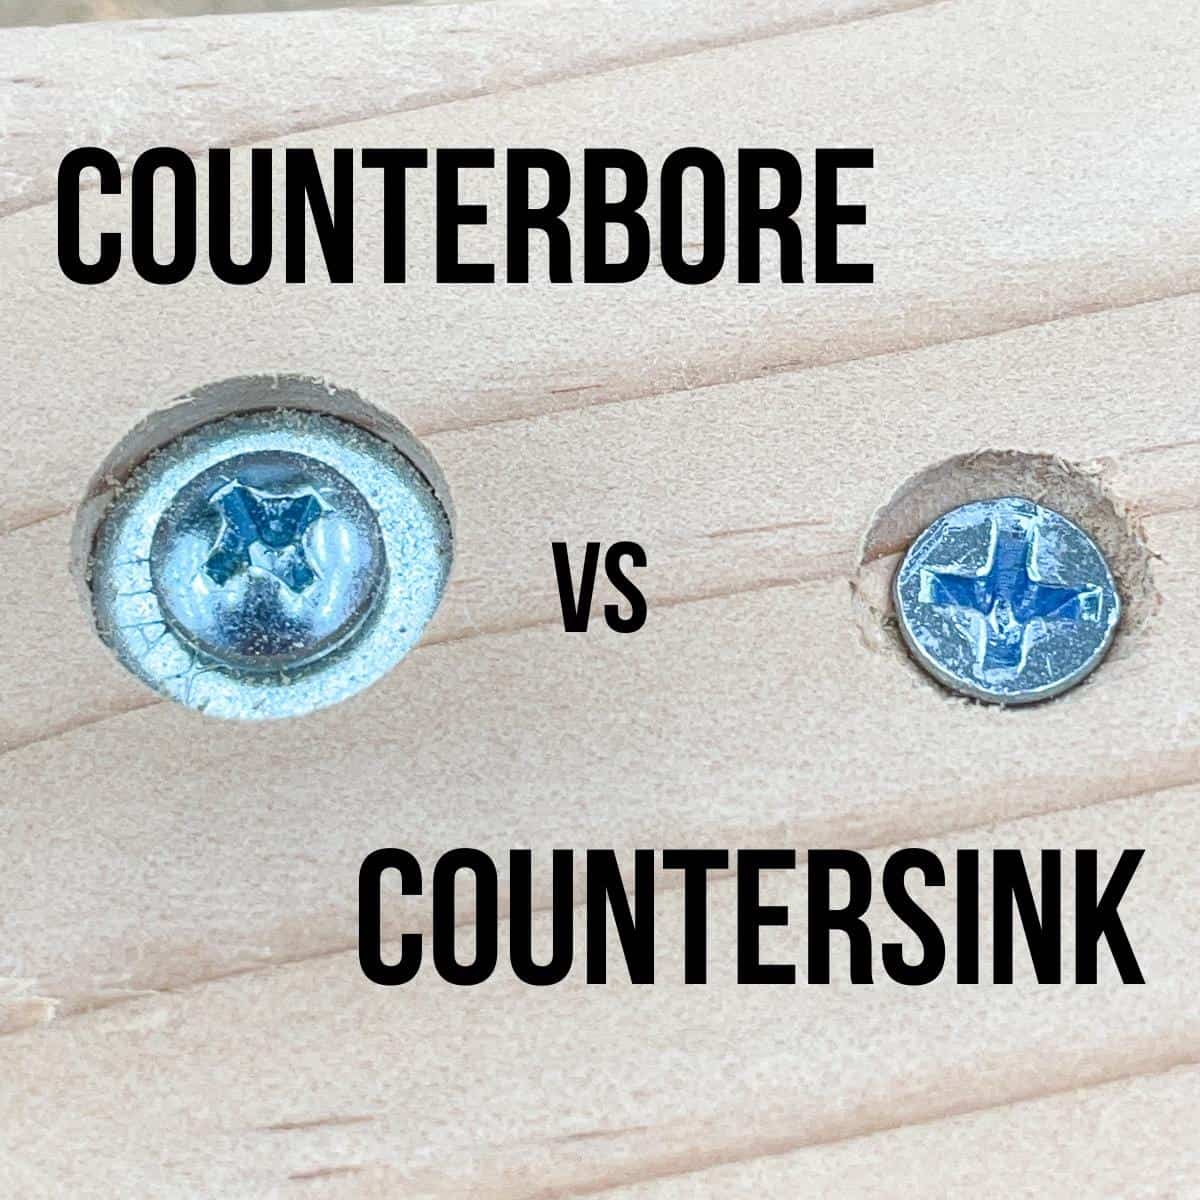 counterbore vs countersink